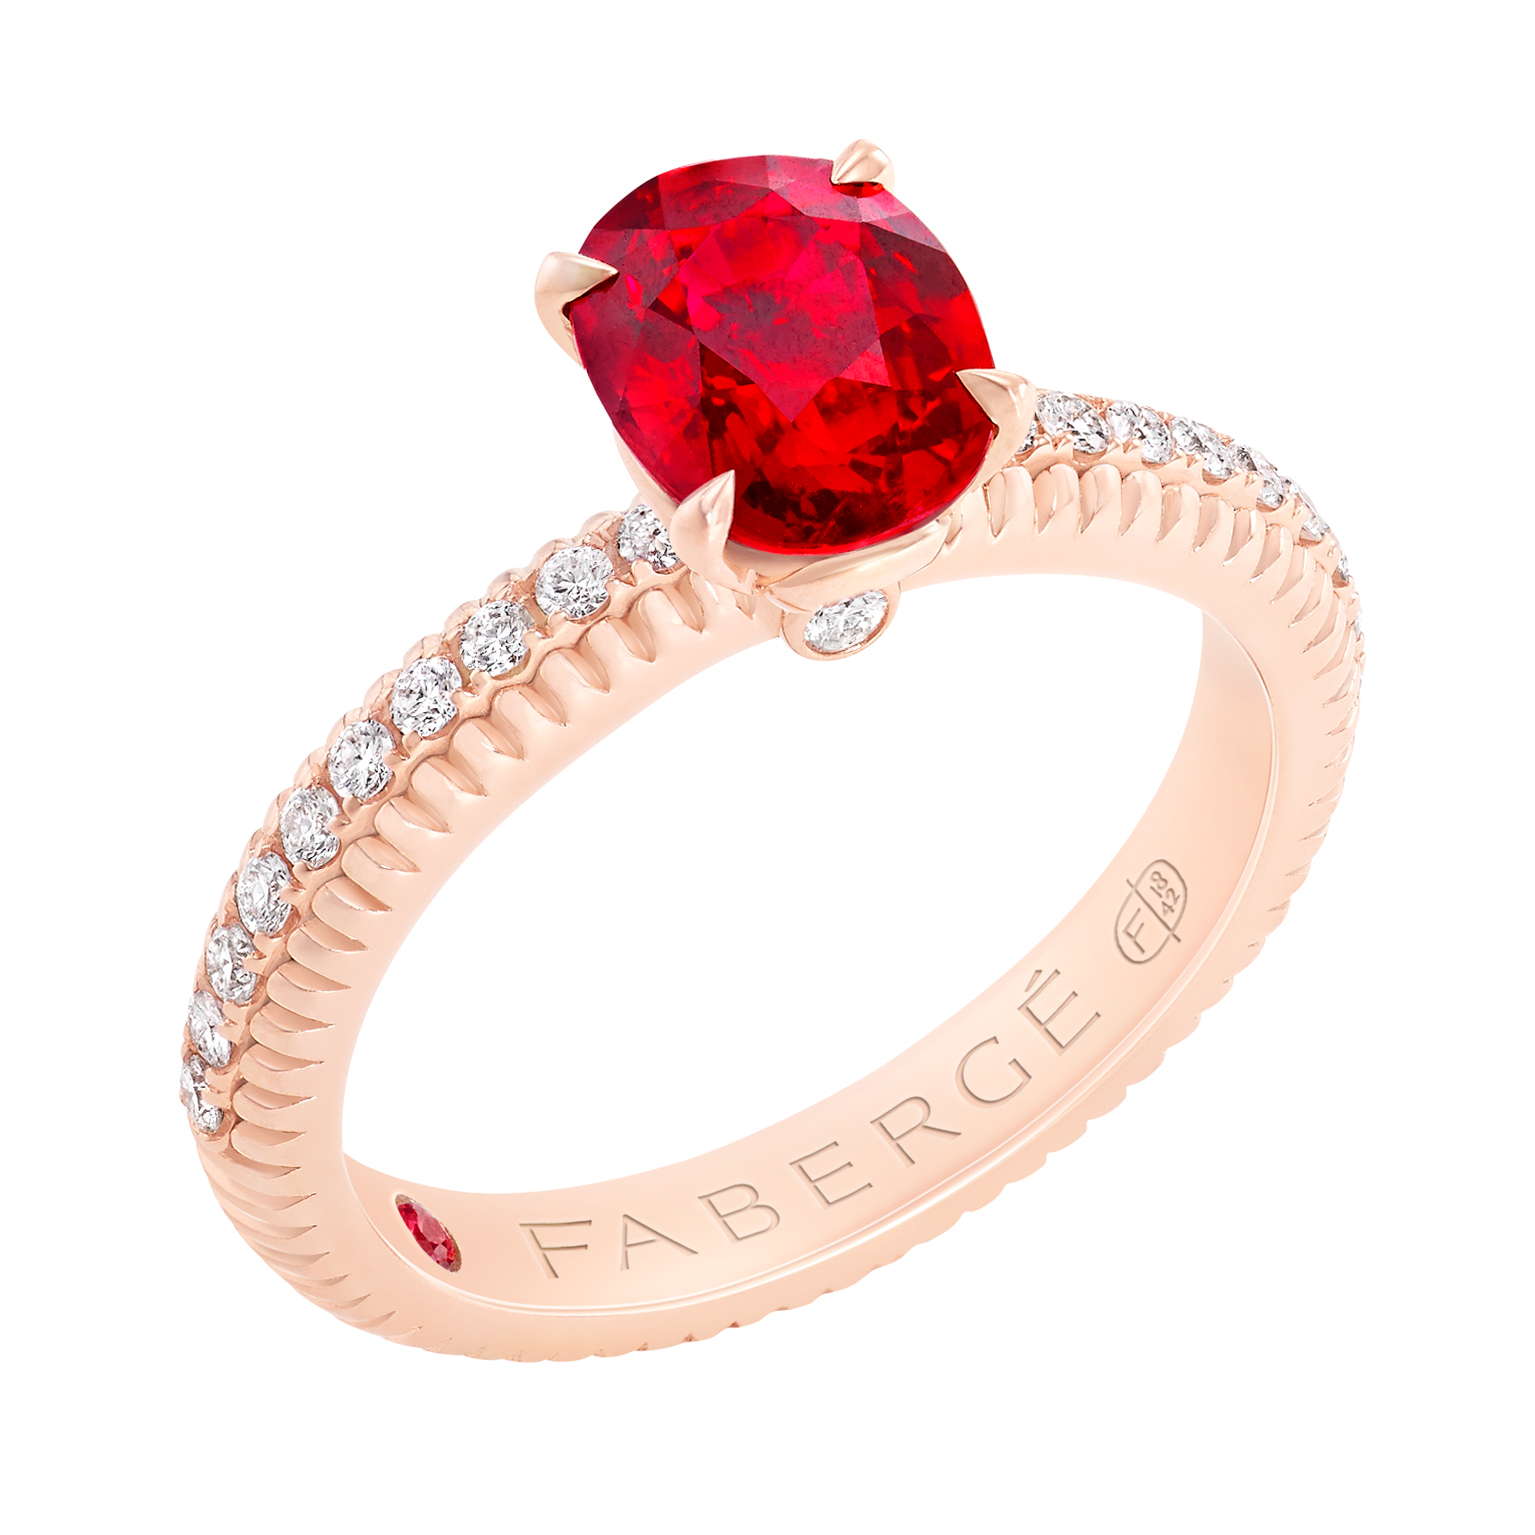 Fabergé法贝热三色之爱系列红宝石戒指